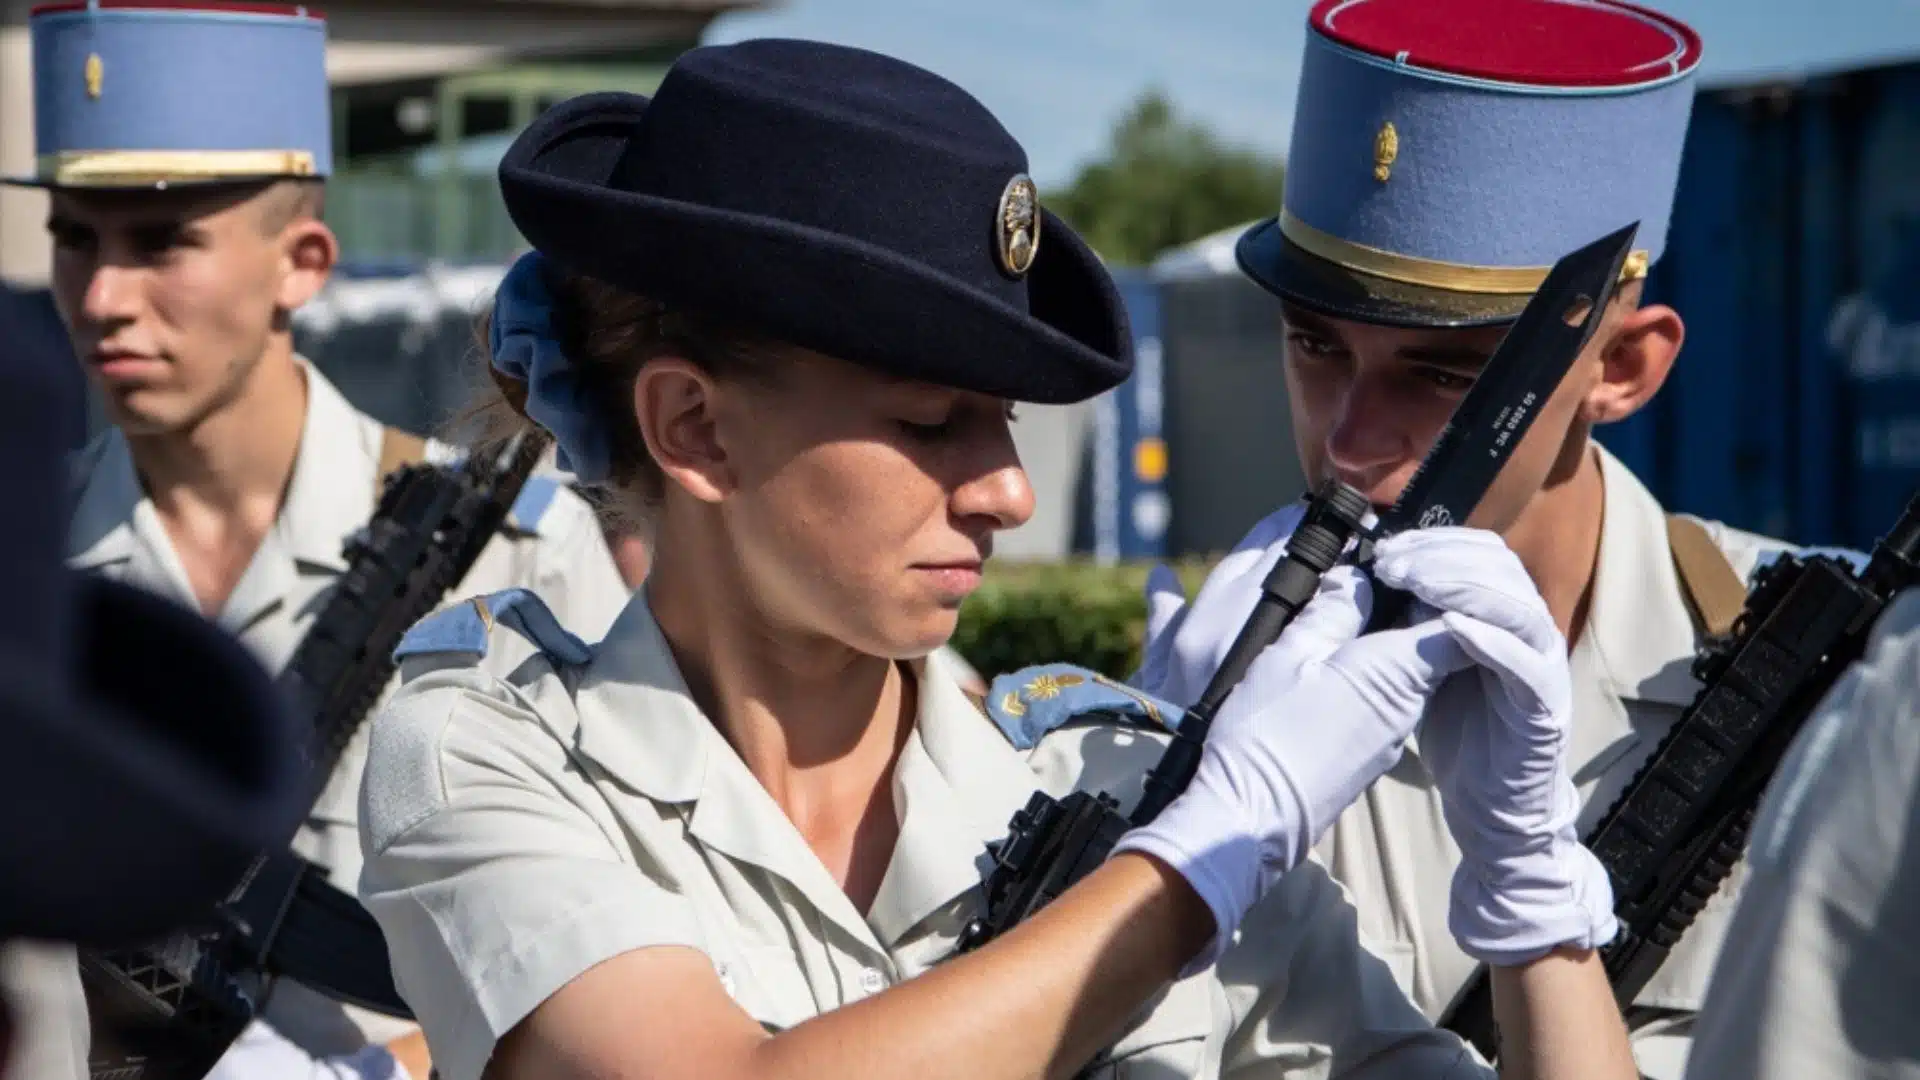 #MeToo des armées: la France lance une mission d'inspection sur les violences sexuelles